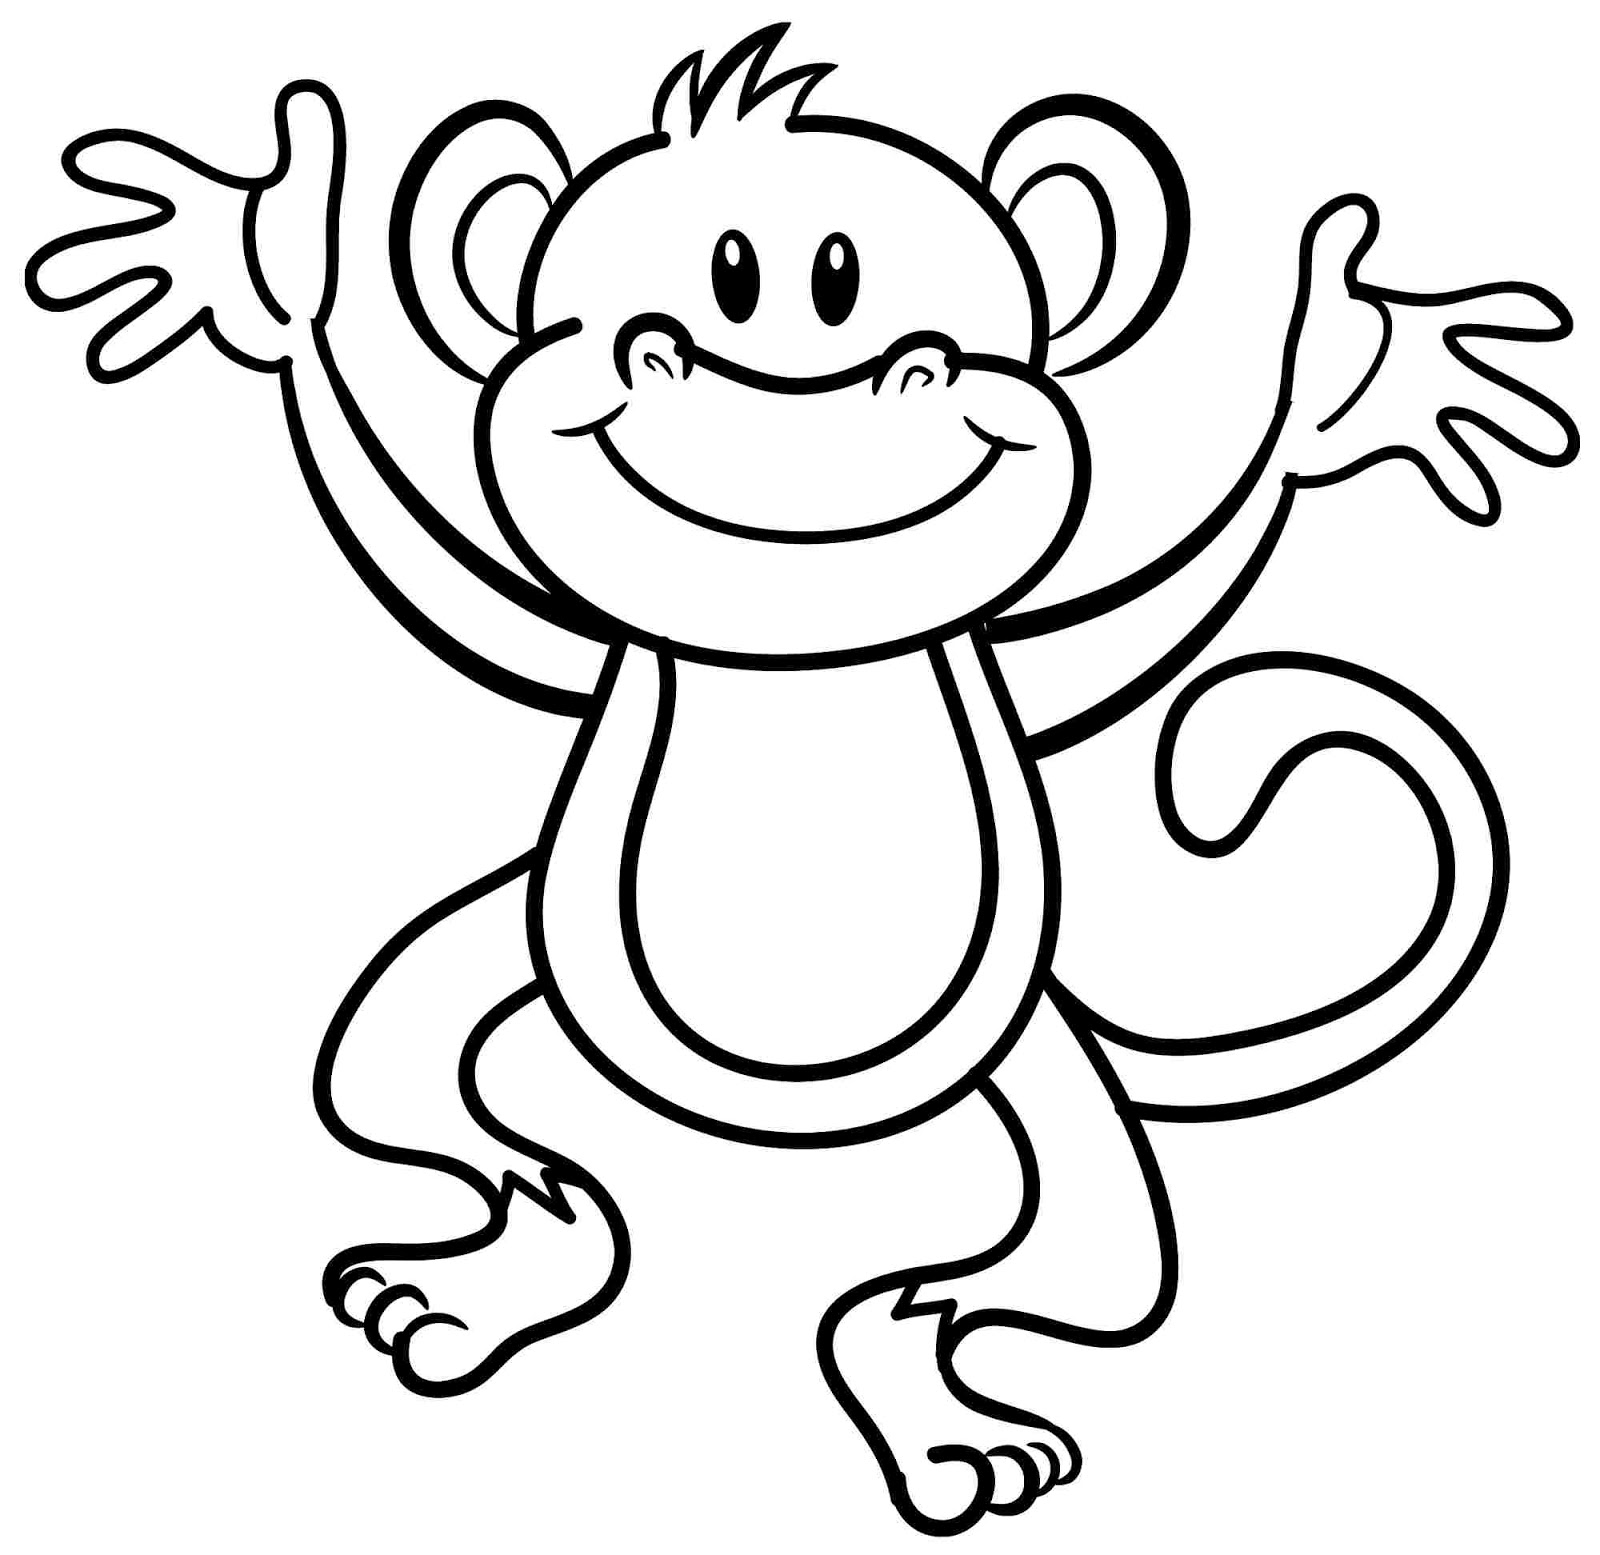 Download 61 Gambar Monyet Yang Mudah Digambar Paling Bagus Gratis